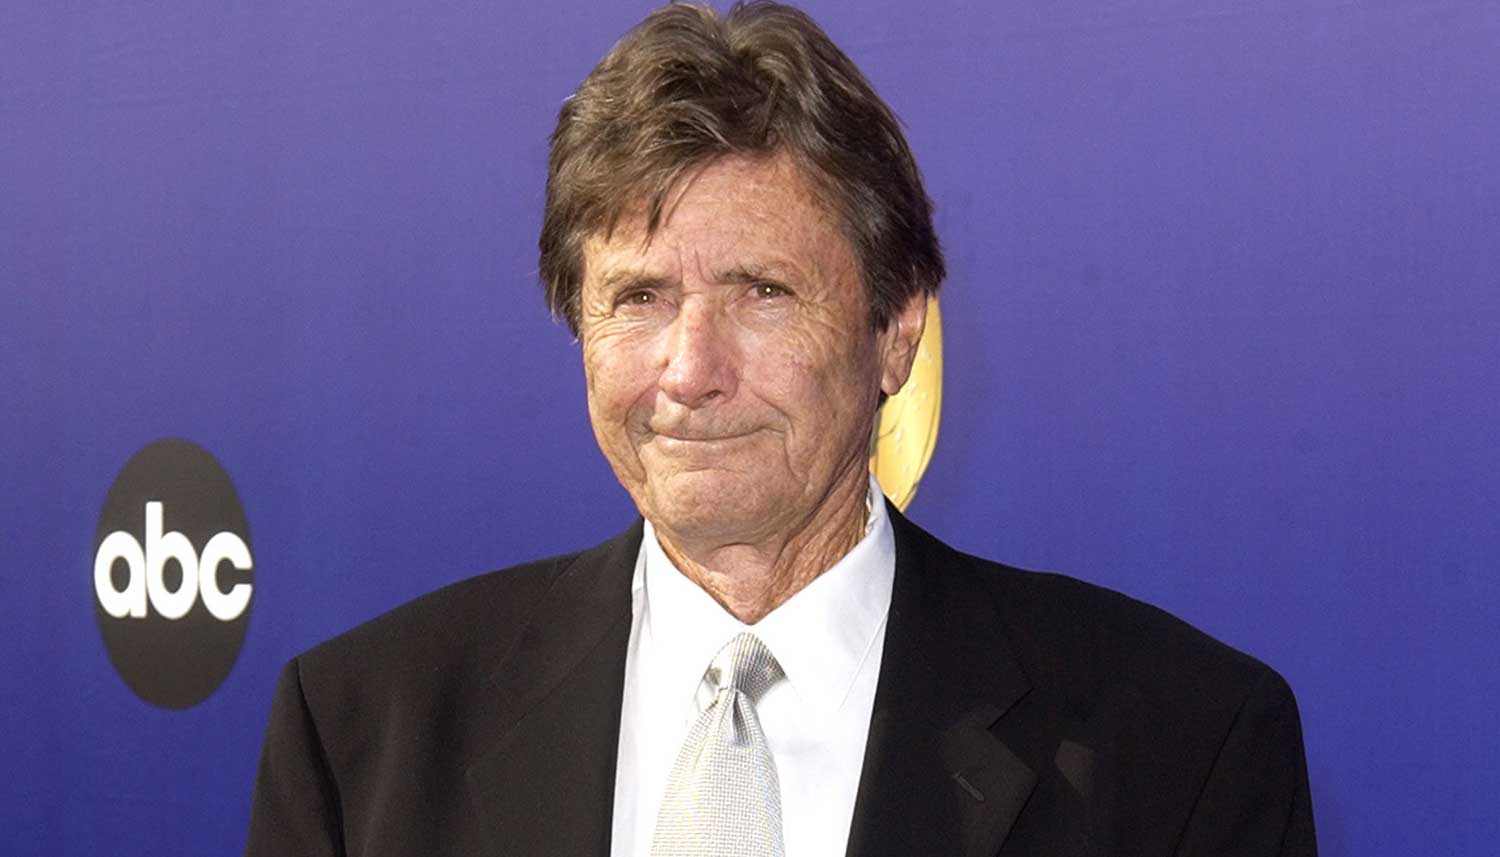 The Dead Pool director, veteran stunt double Wayne “Buddy” Van Horn passes away